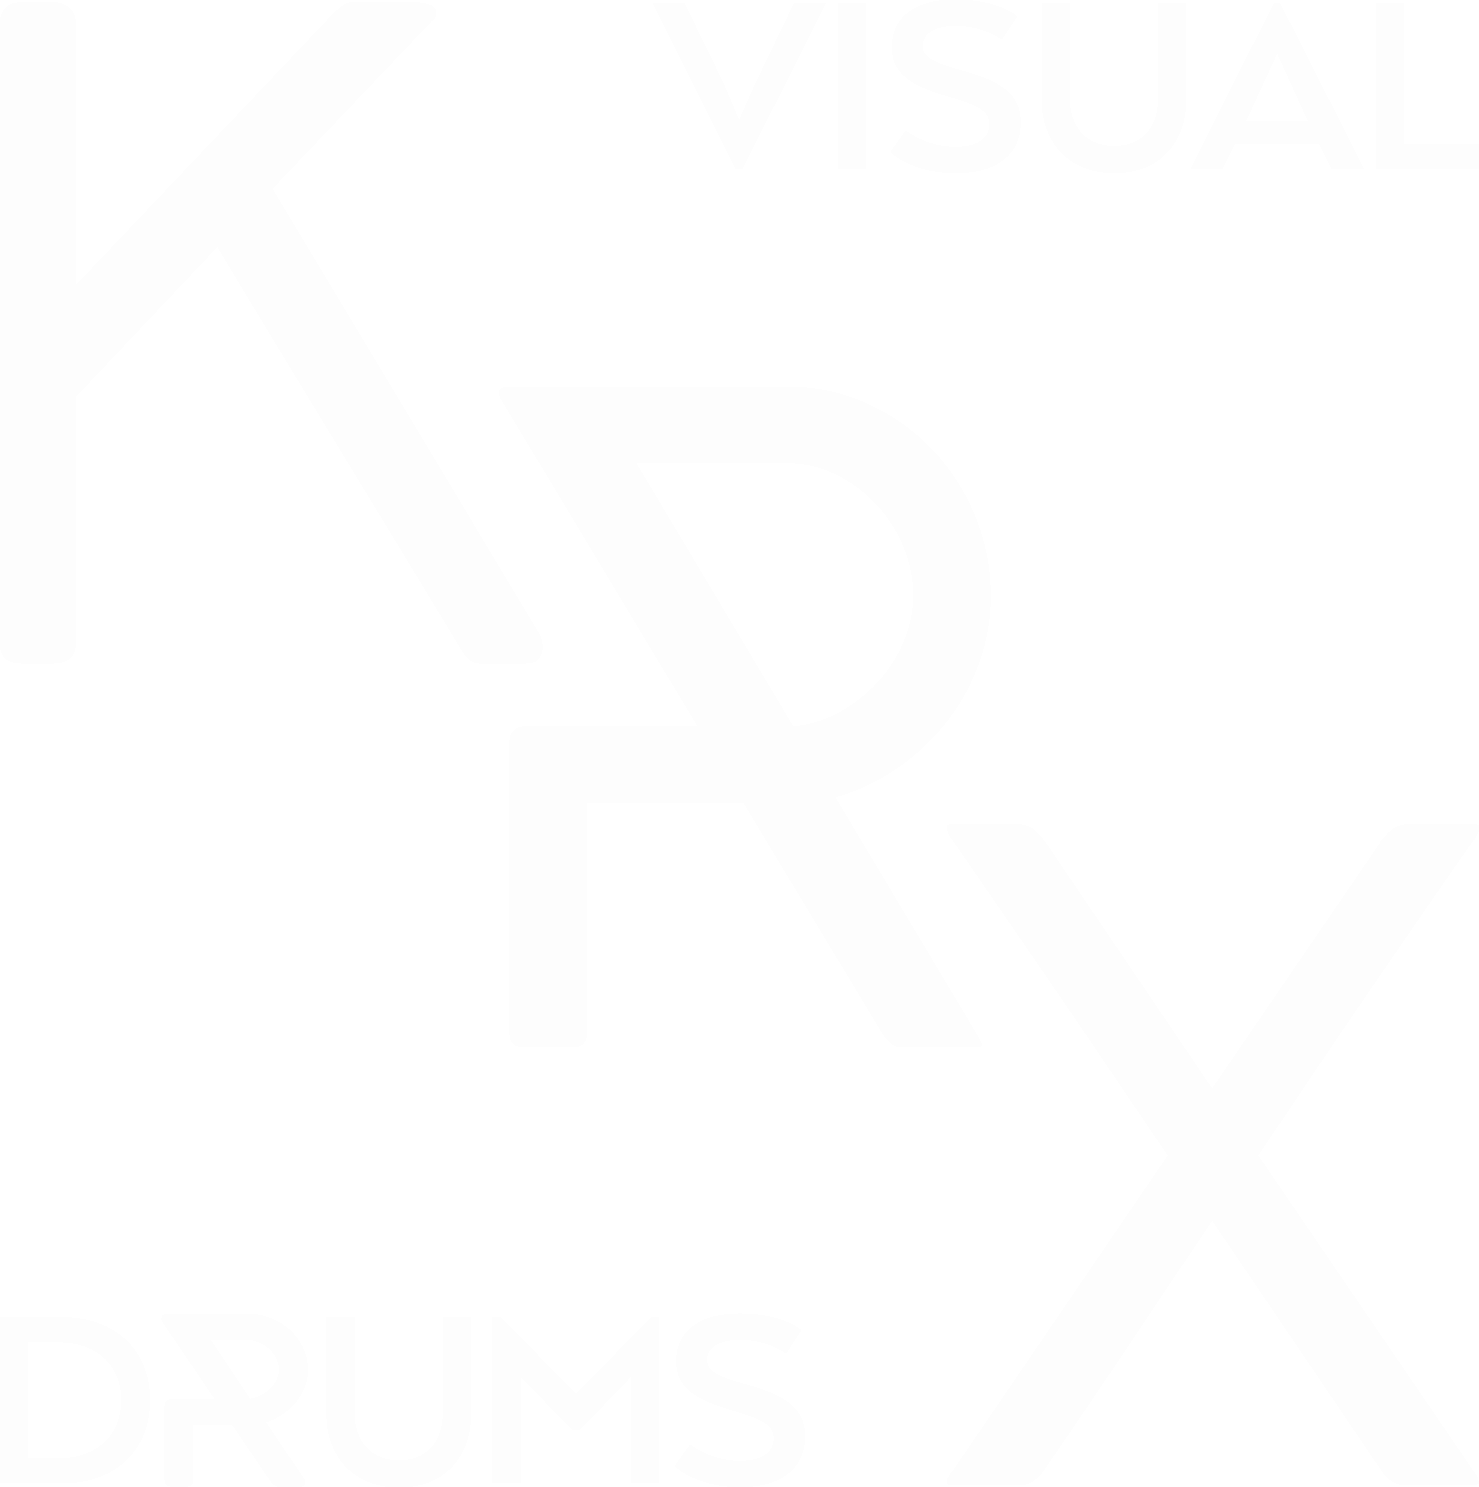 KrX VisuaL DrumS